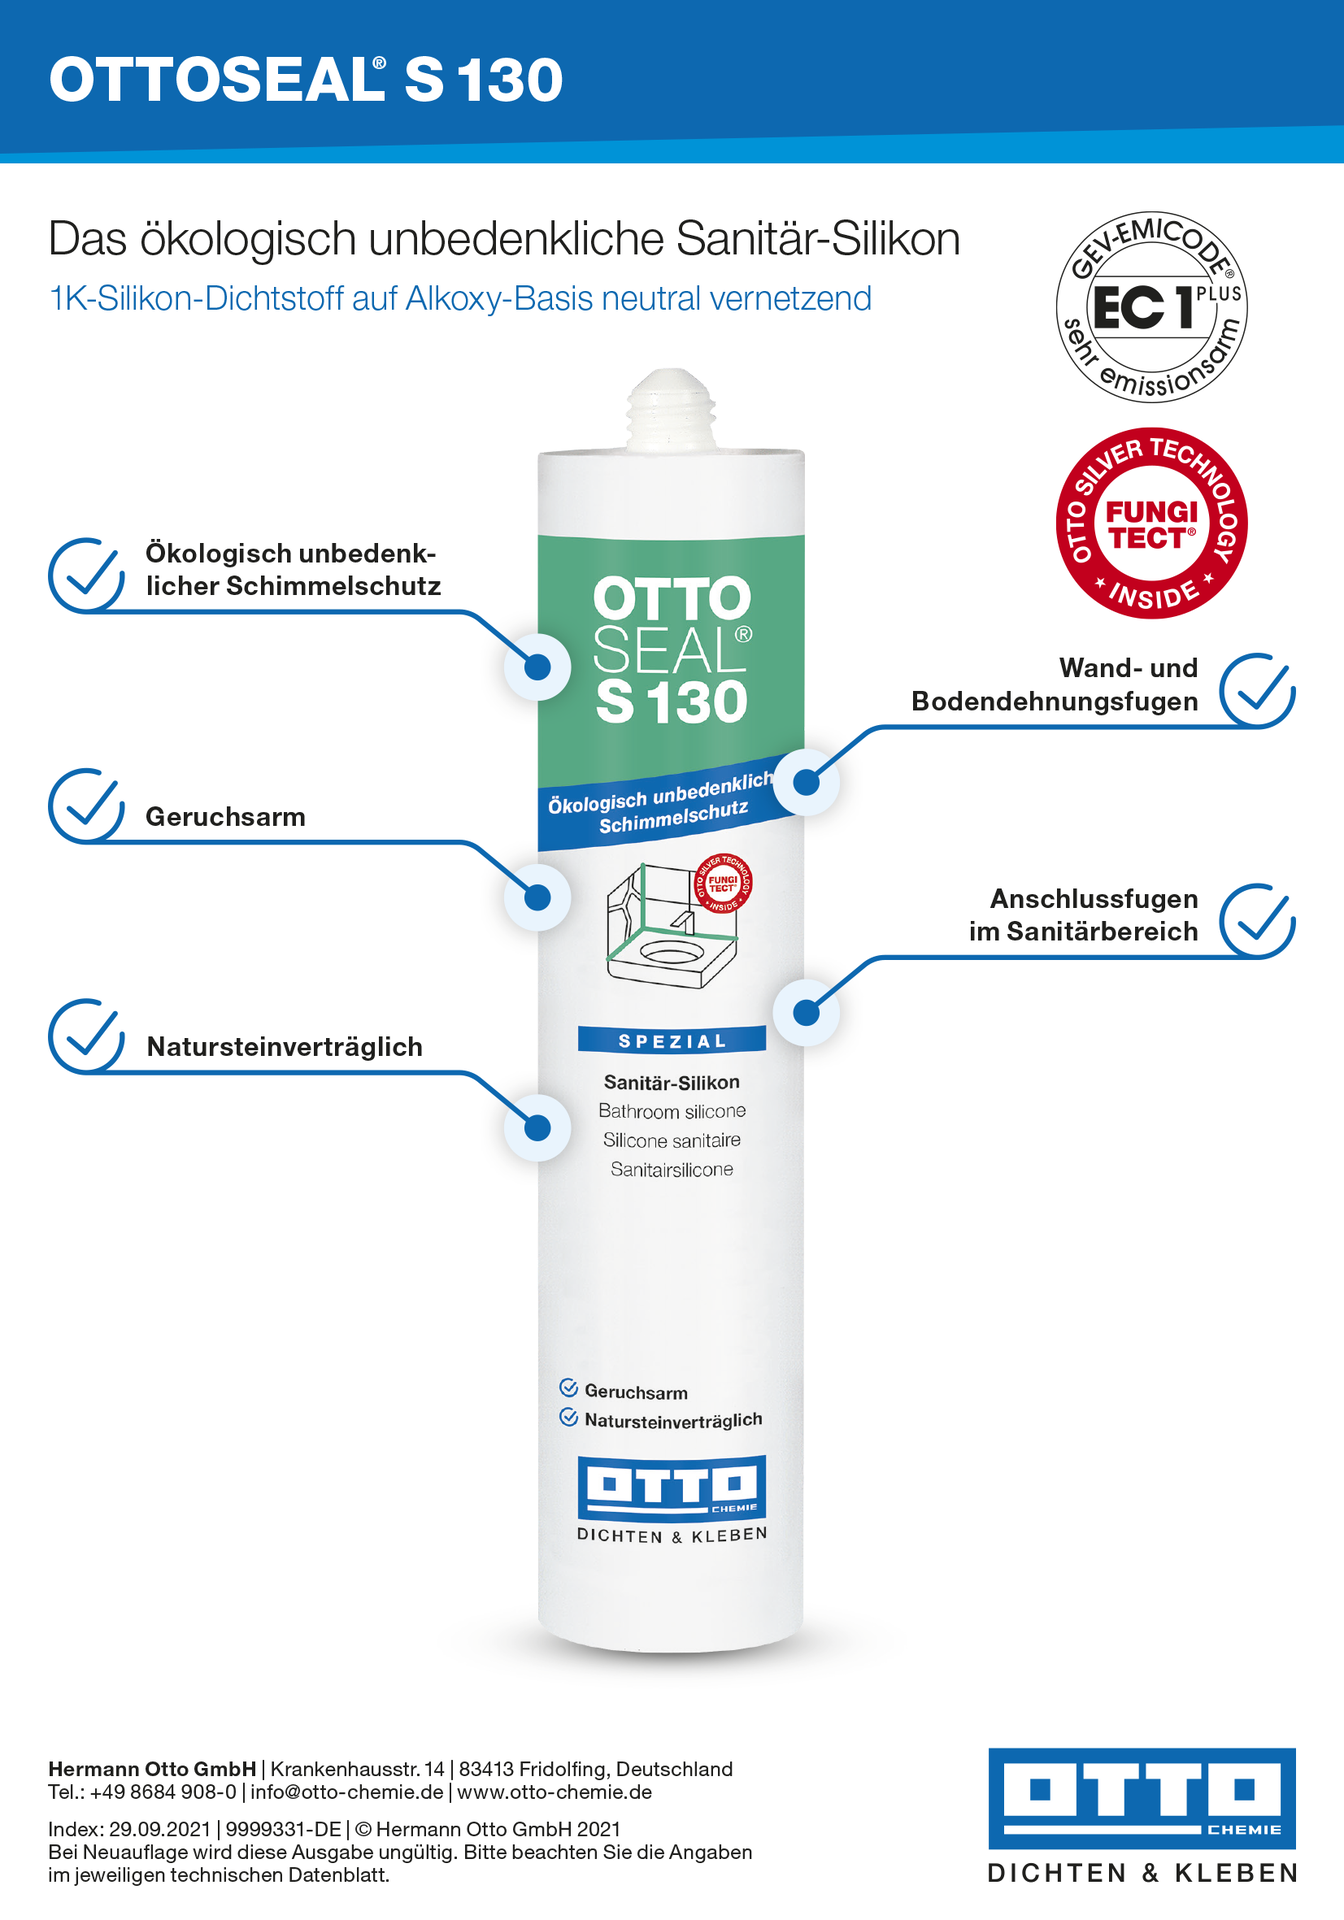 OTTOSEAL® S130 Das Alkoxy-Sanitär-Silicon mit Fungitect® Silber-Technologie 